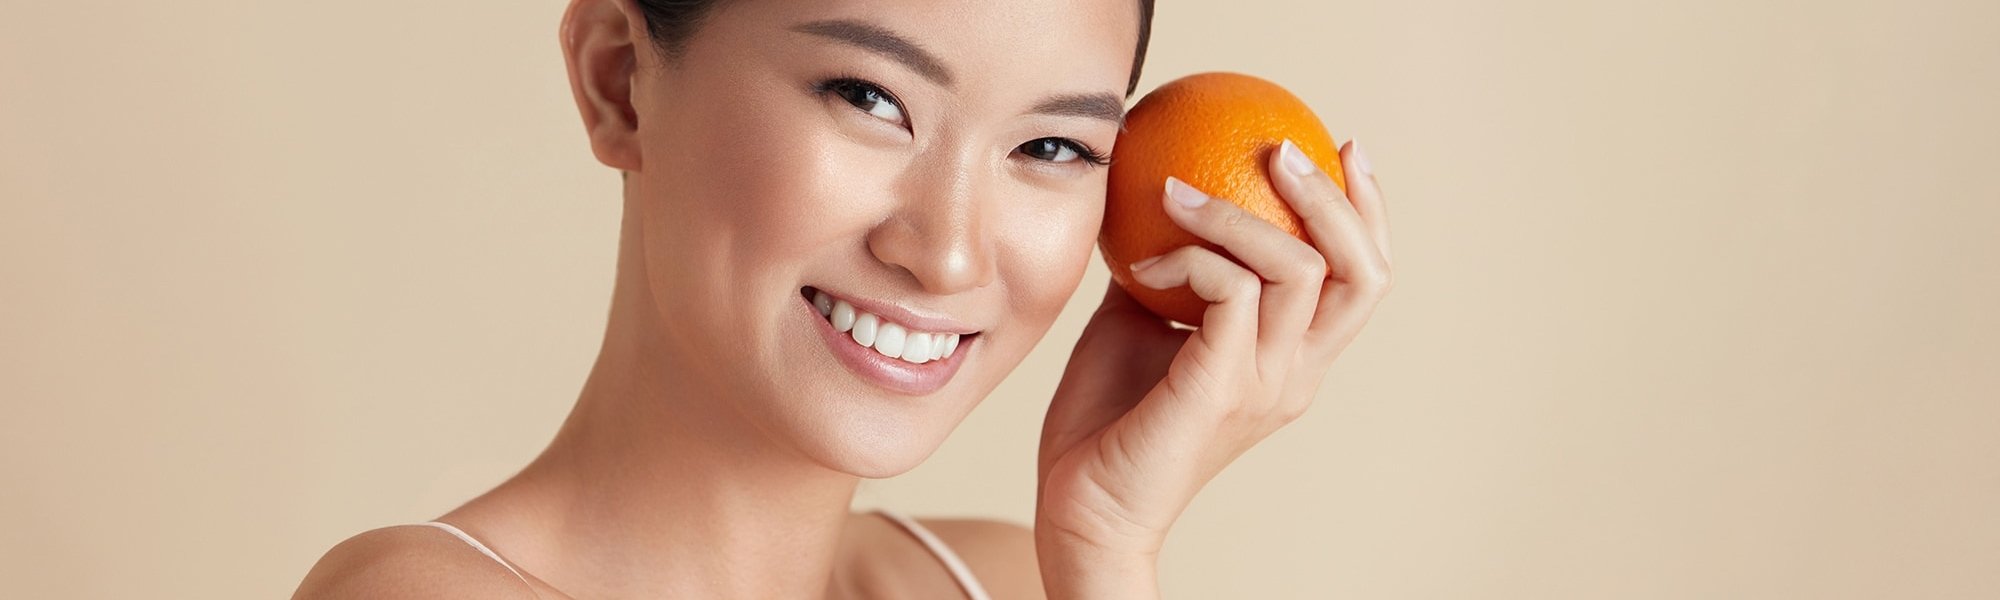 Eine Junge Frau hält sich eine Orange in der Hand